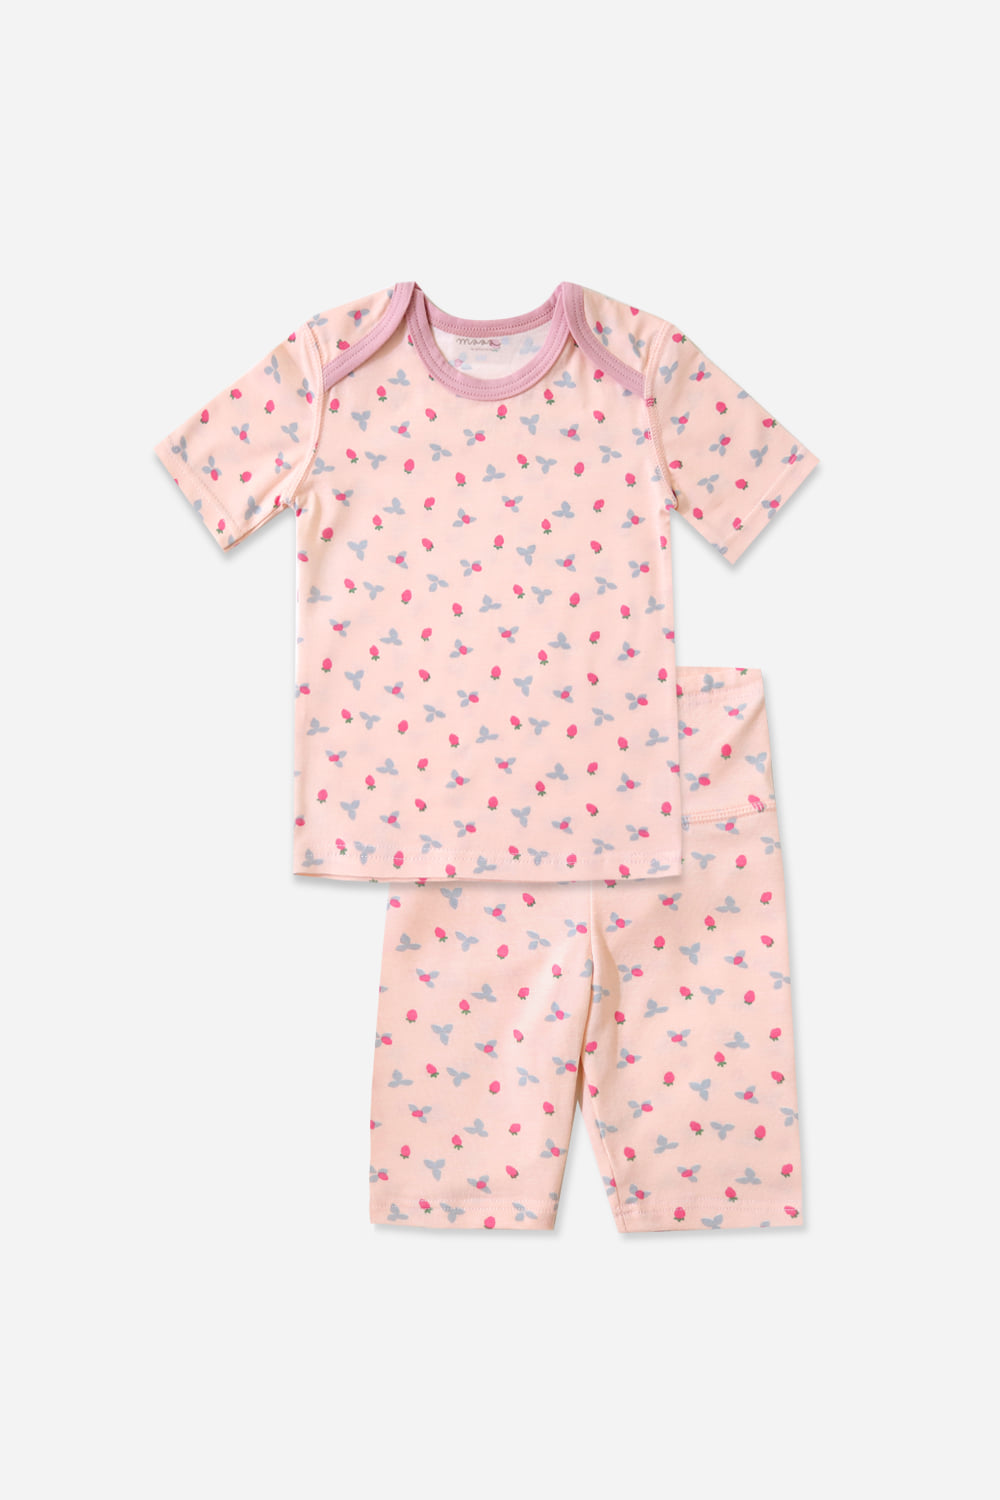 베리베리 베이비-5부잠옷, 홈웨어, 아동내복, 아동속옷,성인잠옷,고후나비